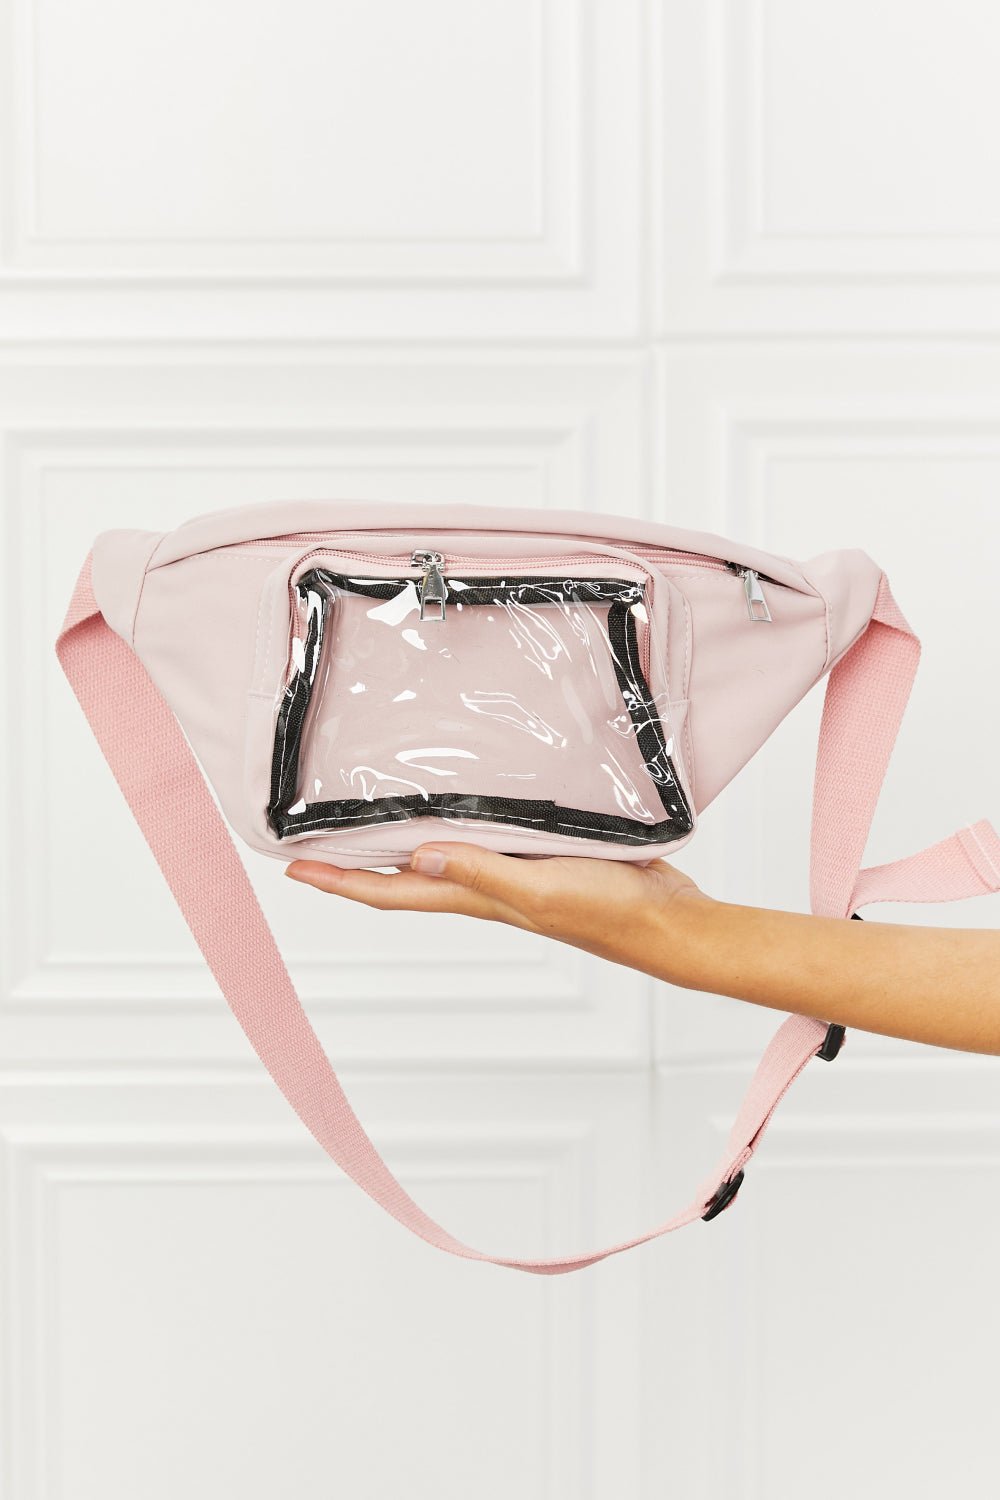 Sling Bag in Blush PinkSling BagFame